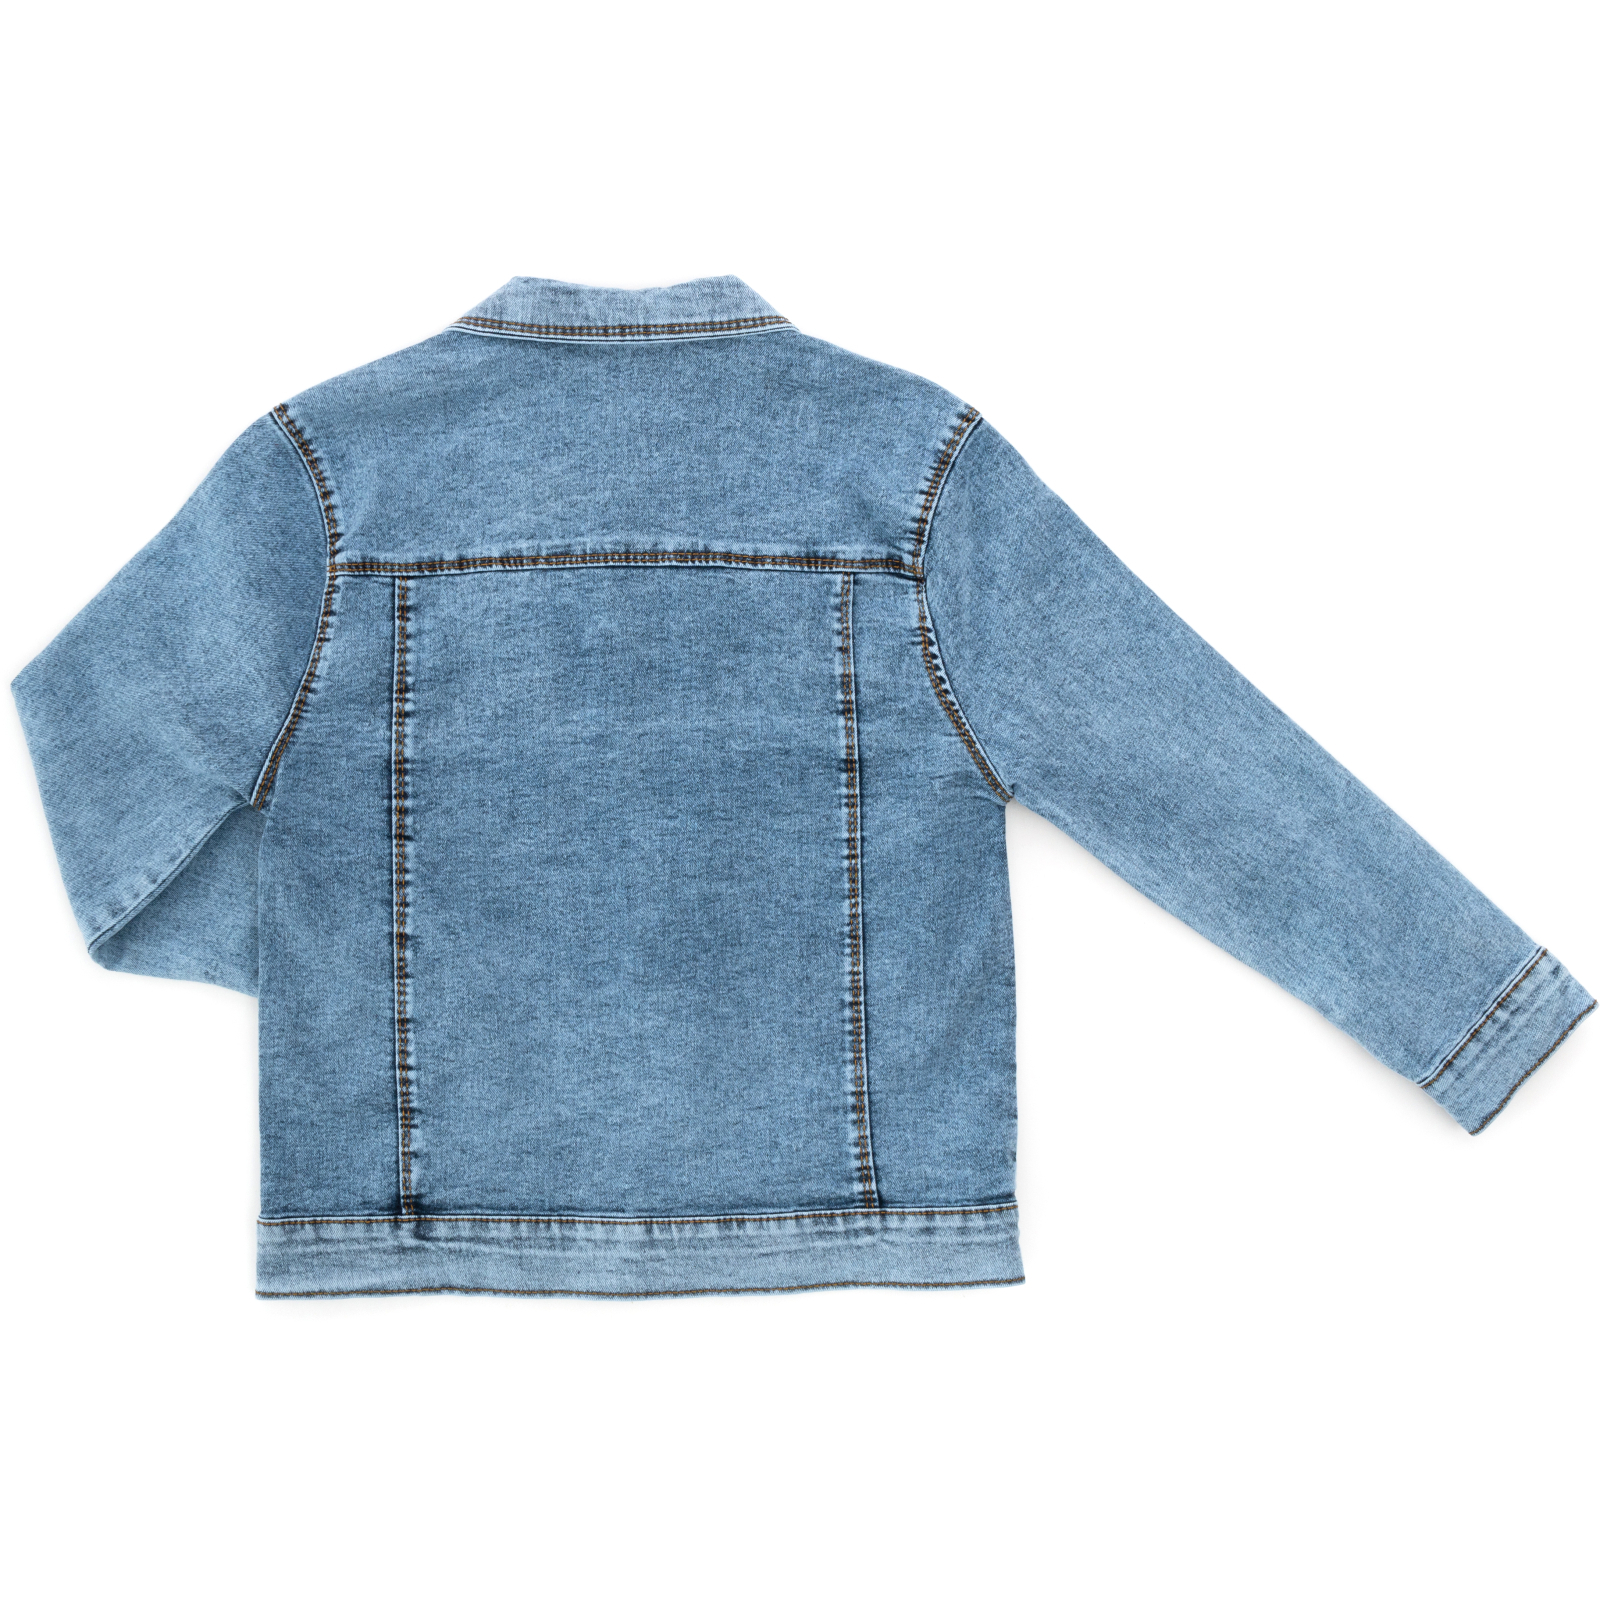 Пиджак Sercino джинсовый (99723-140B-blue) изображение 2